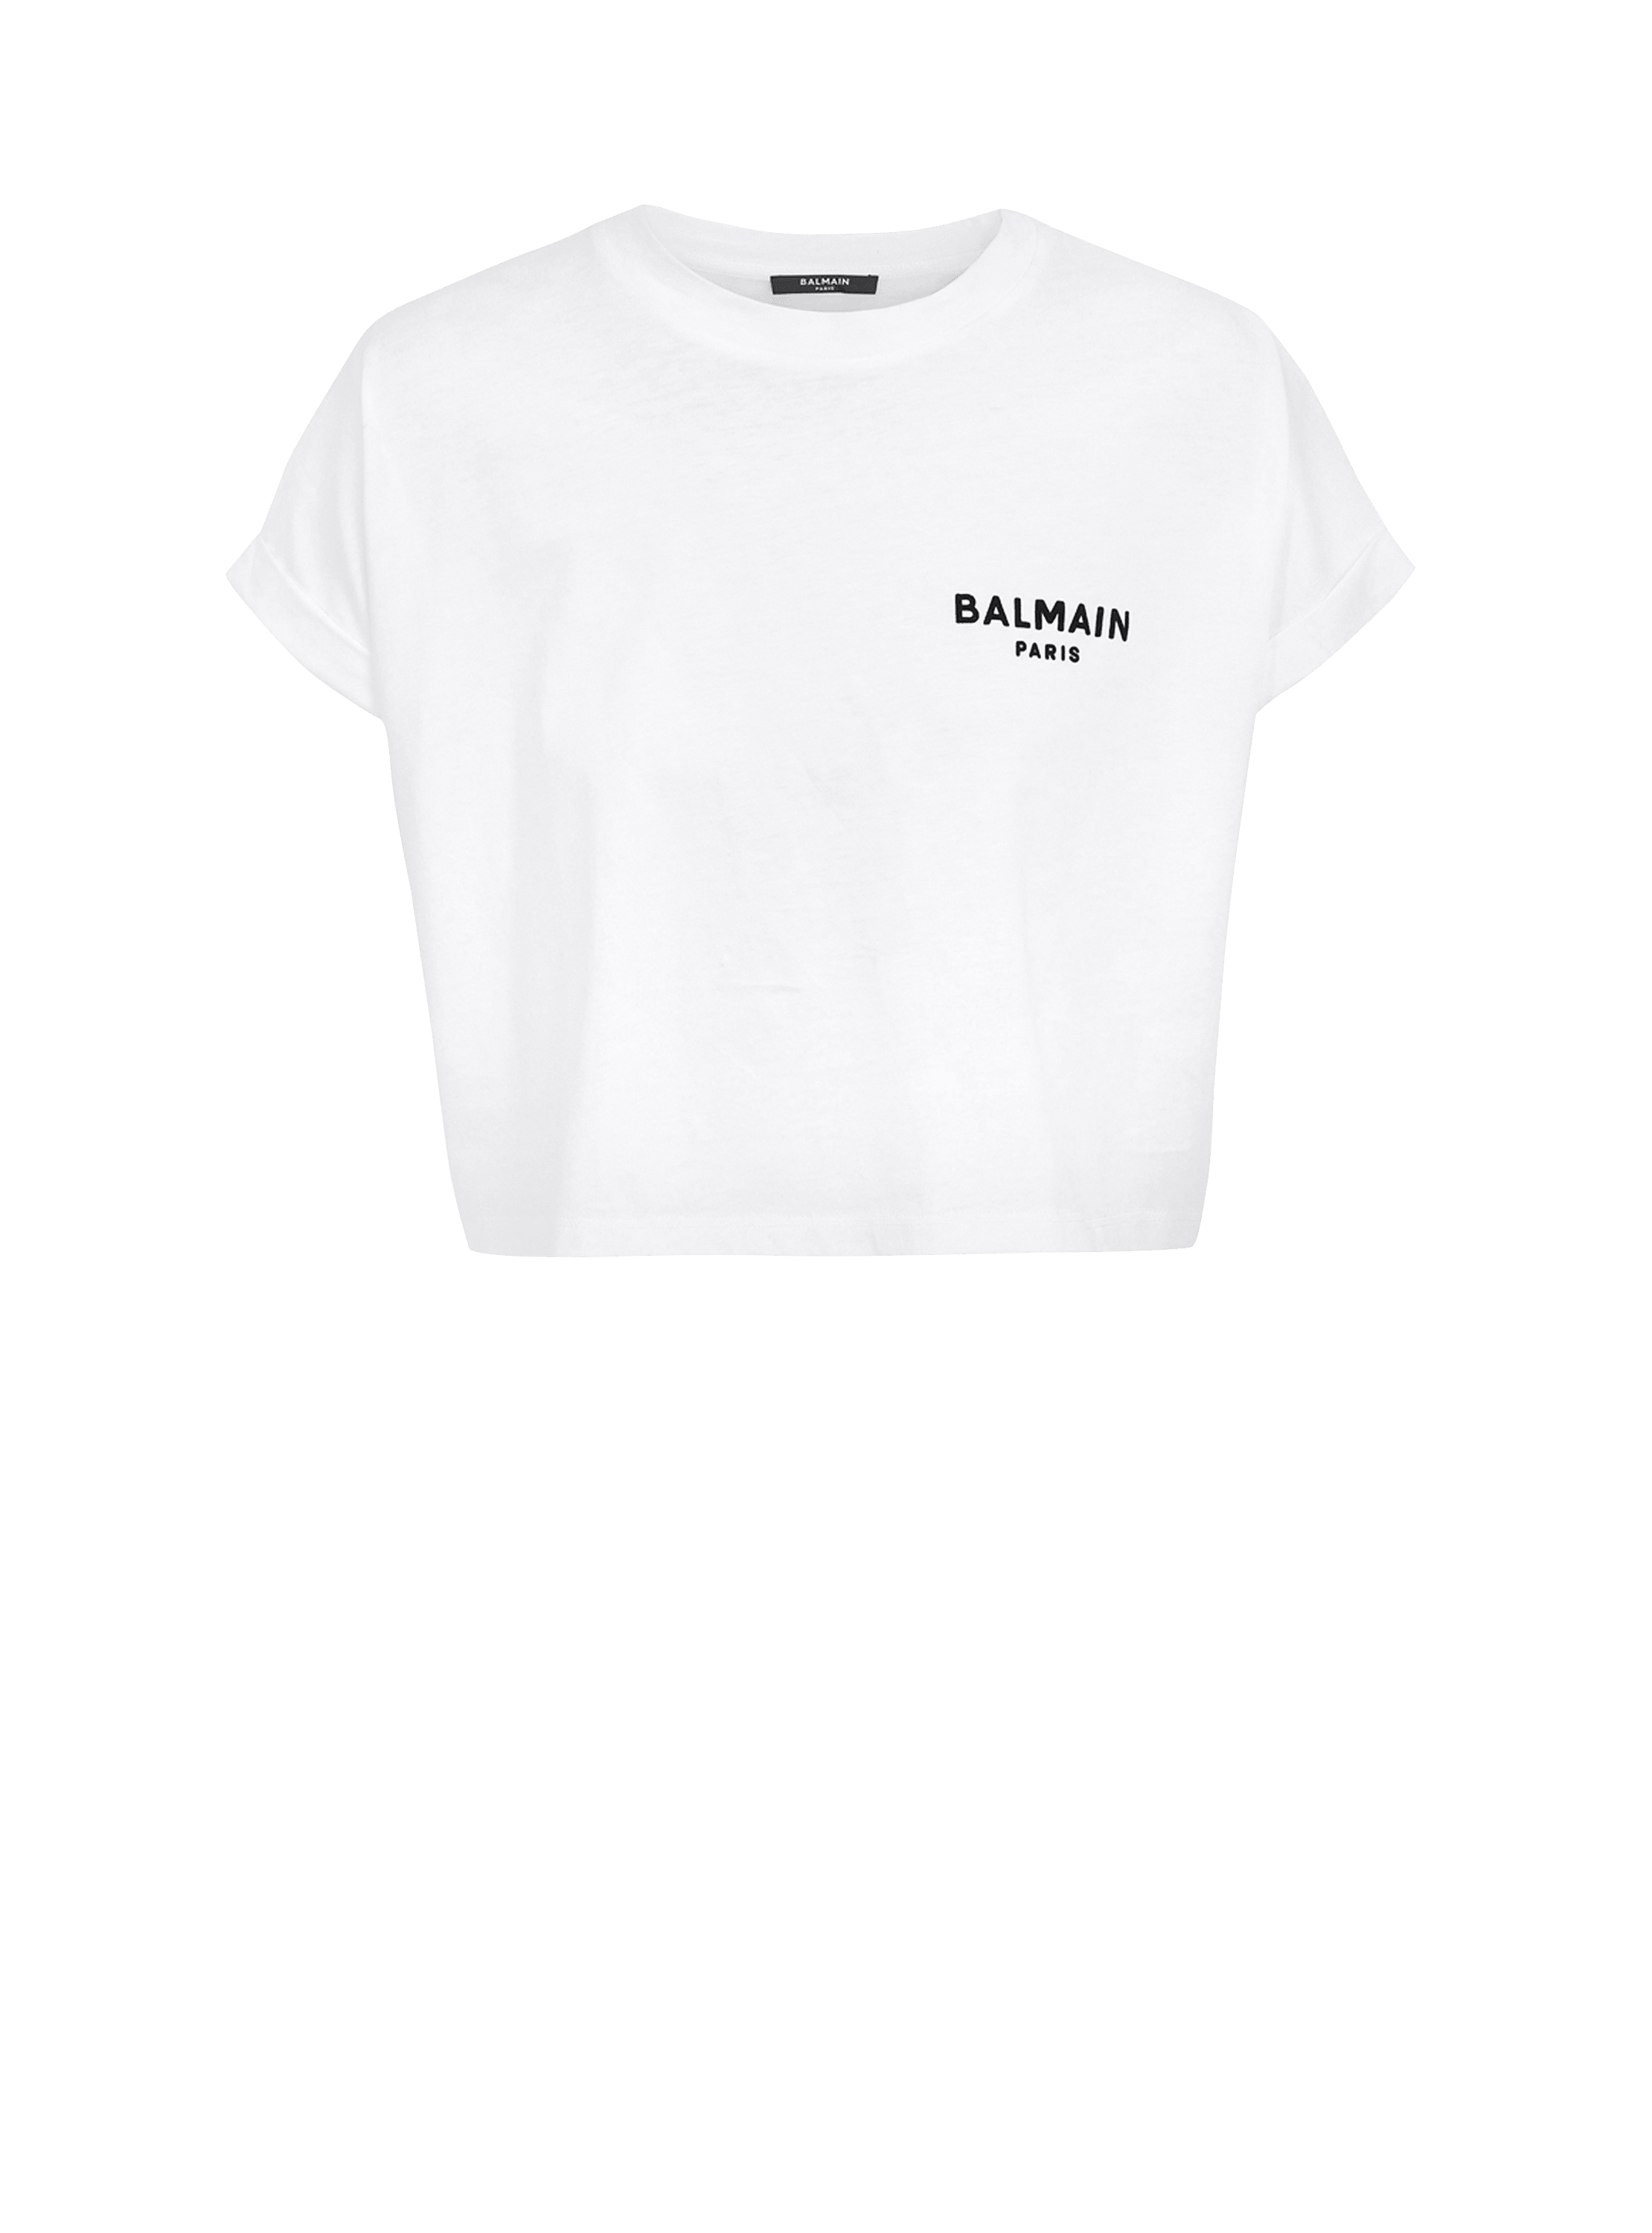 Camiseta corta con logotipo de Balmain Paris serigrafiado, blanco, hi-res